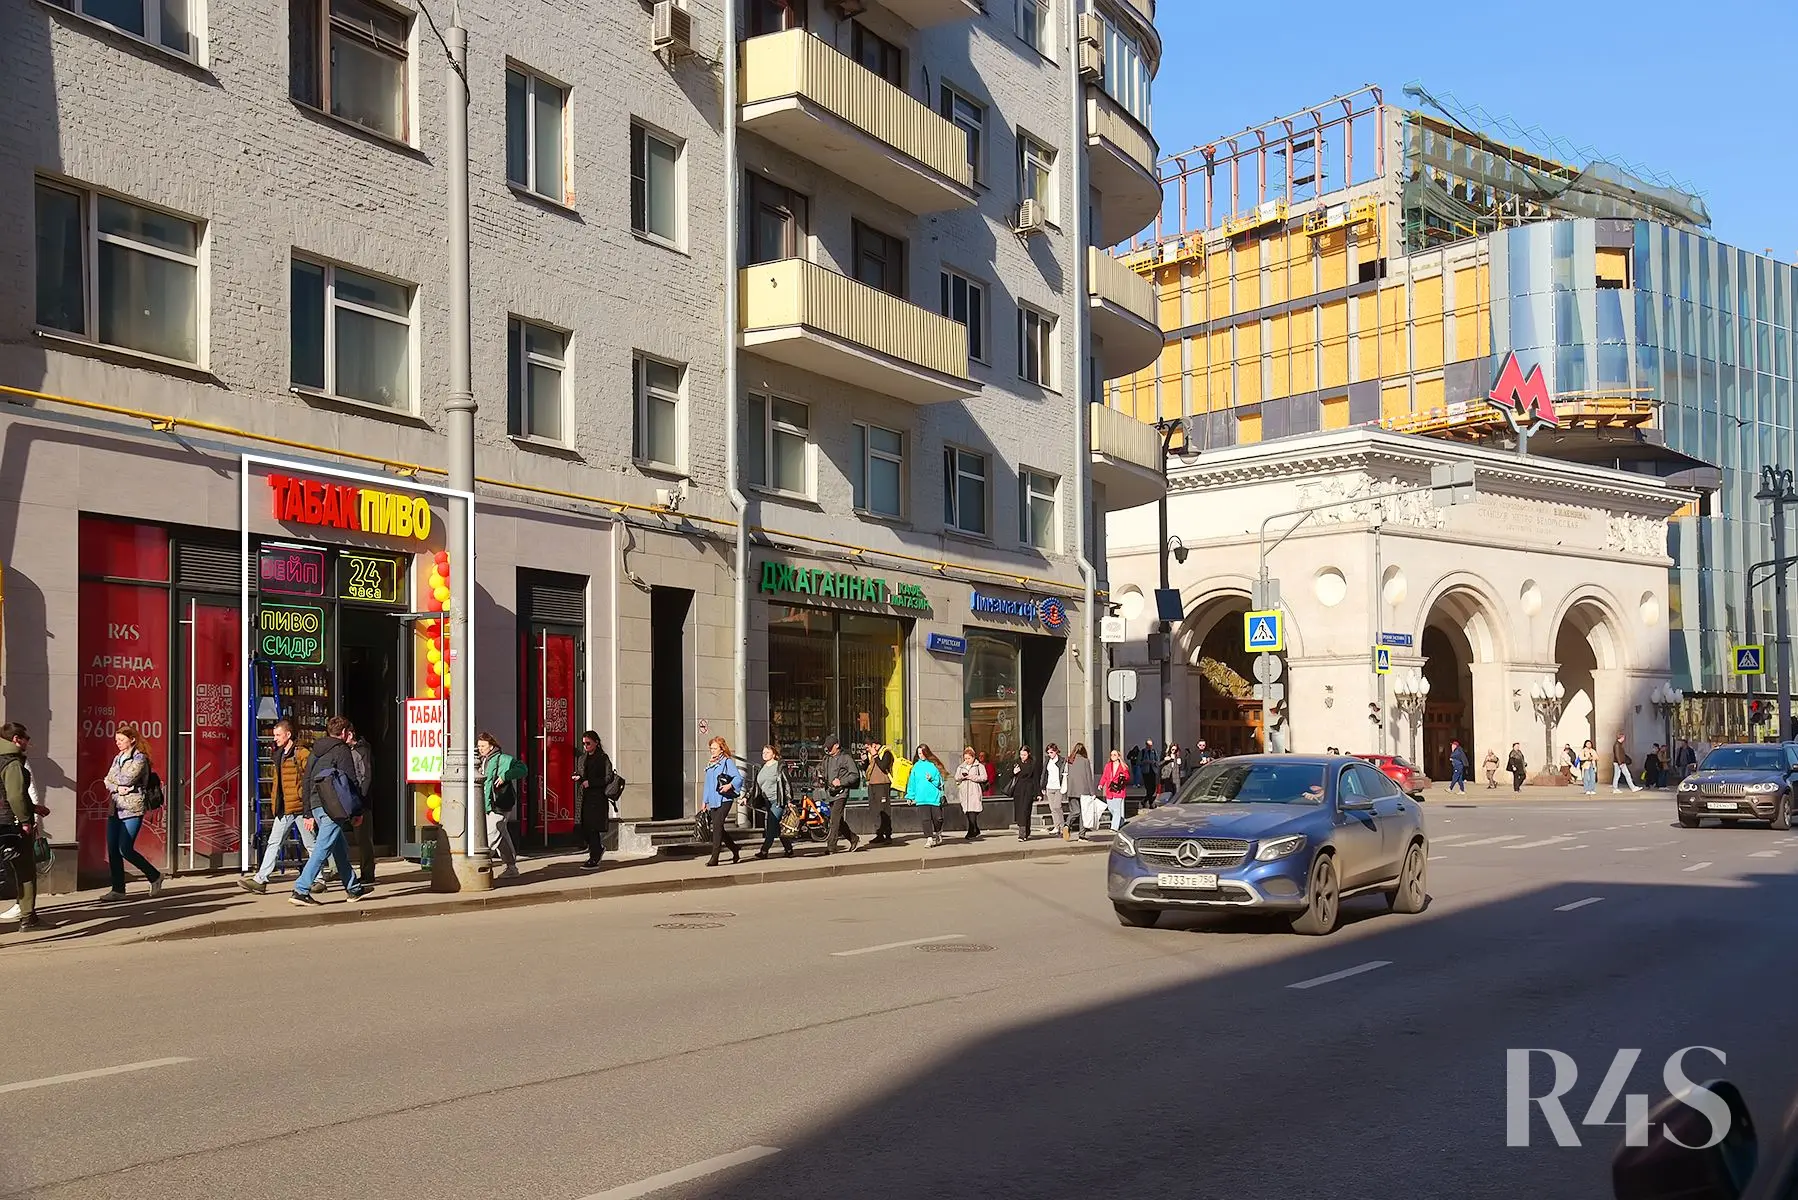 Продажа готового арендного бизнеса площадью 19.7 м2 в Москве: Грузинский Вал, 28/45 R4S | Realty4Sale